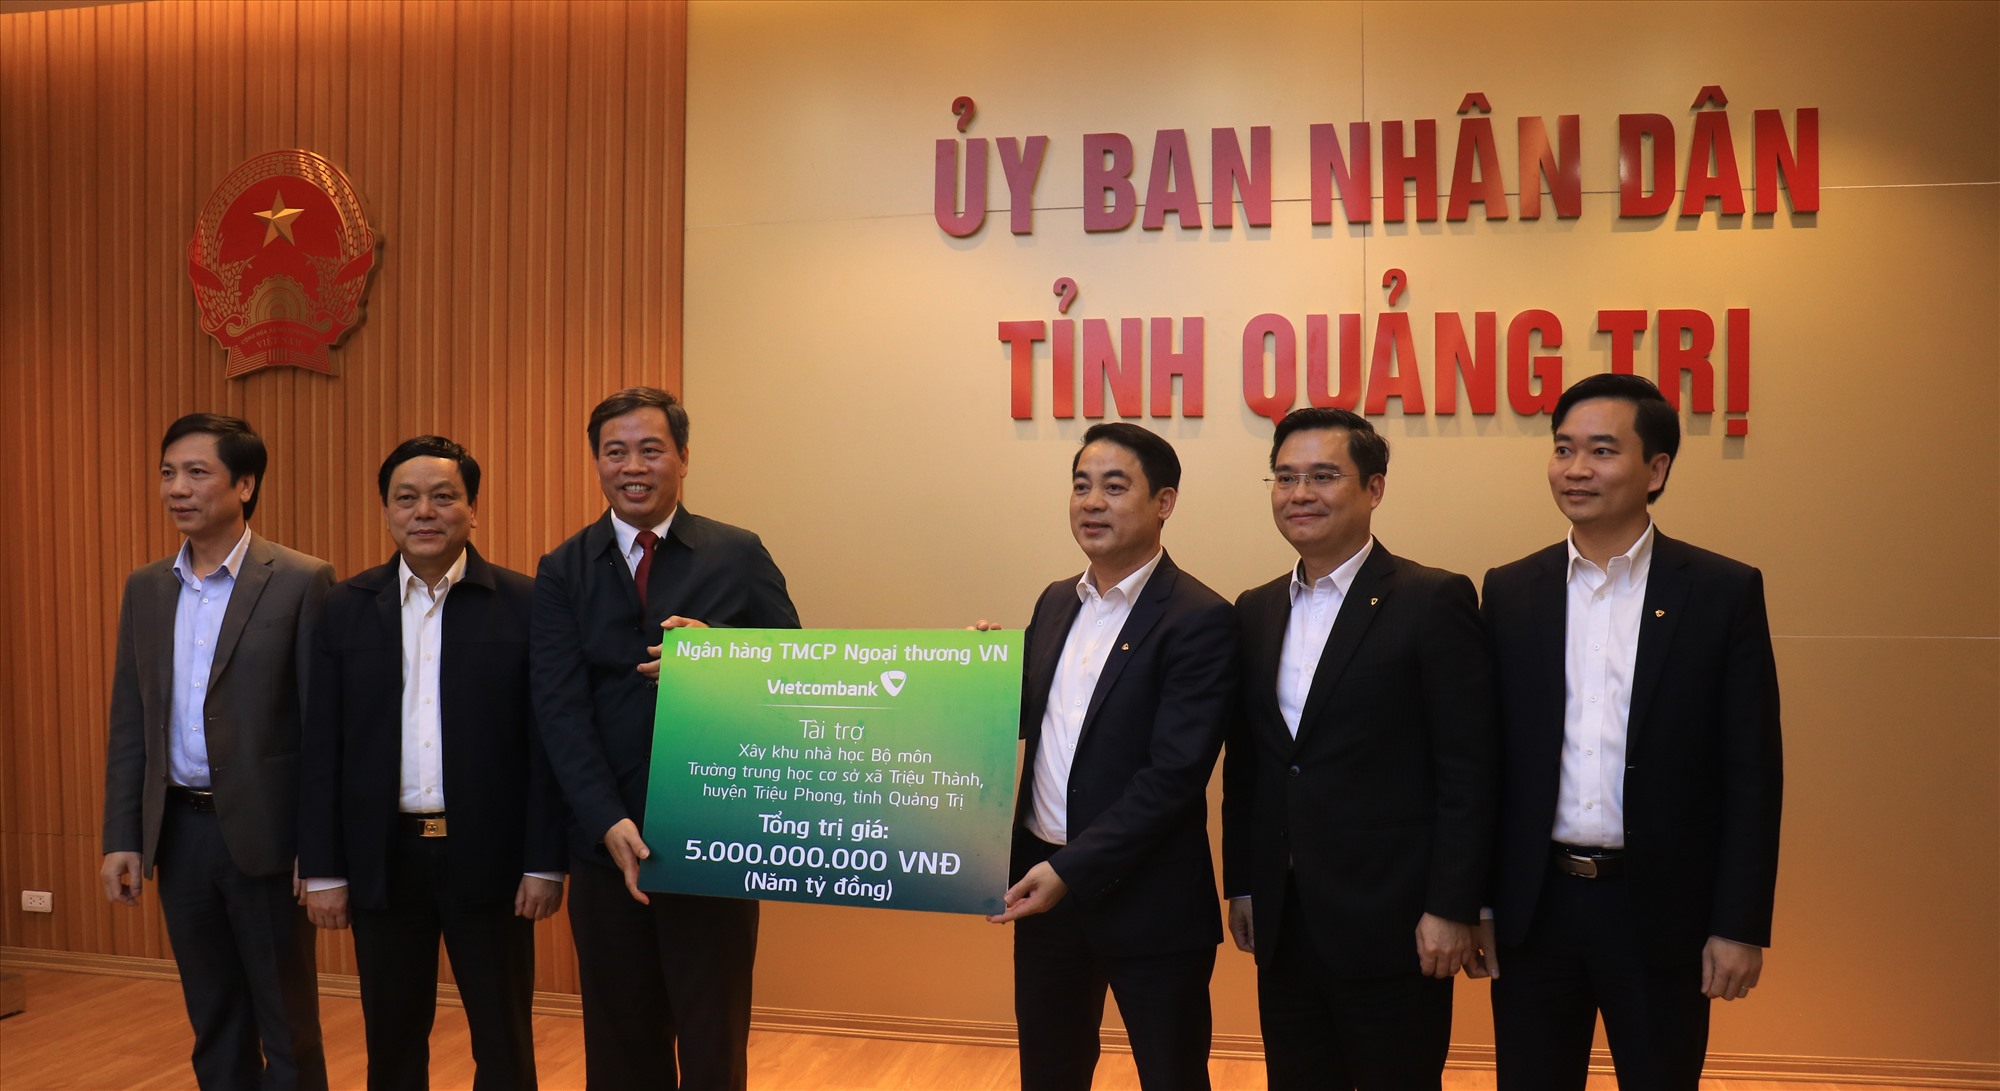 Lãnh đạo Vietcombank Việt Nam trao biển tượng trưng hỗ trợ 5 tỉ đồng xây dựng Khu nhà học bộ môn Trường Trung học cơ sở Triệu Thành, huyện Triệu Phong -Ảnh: T.T